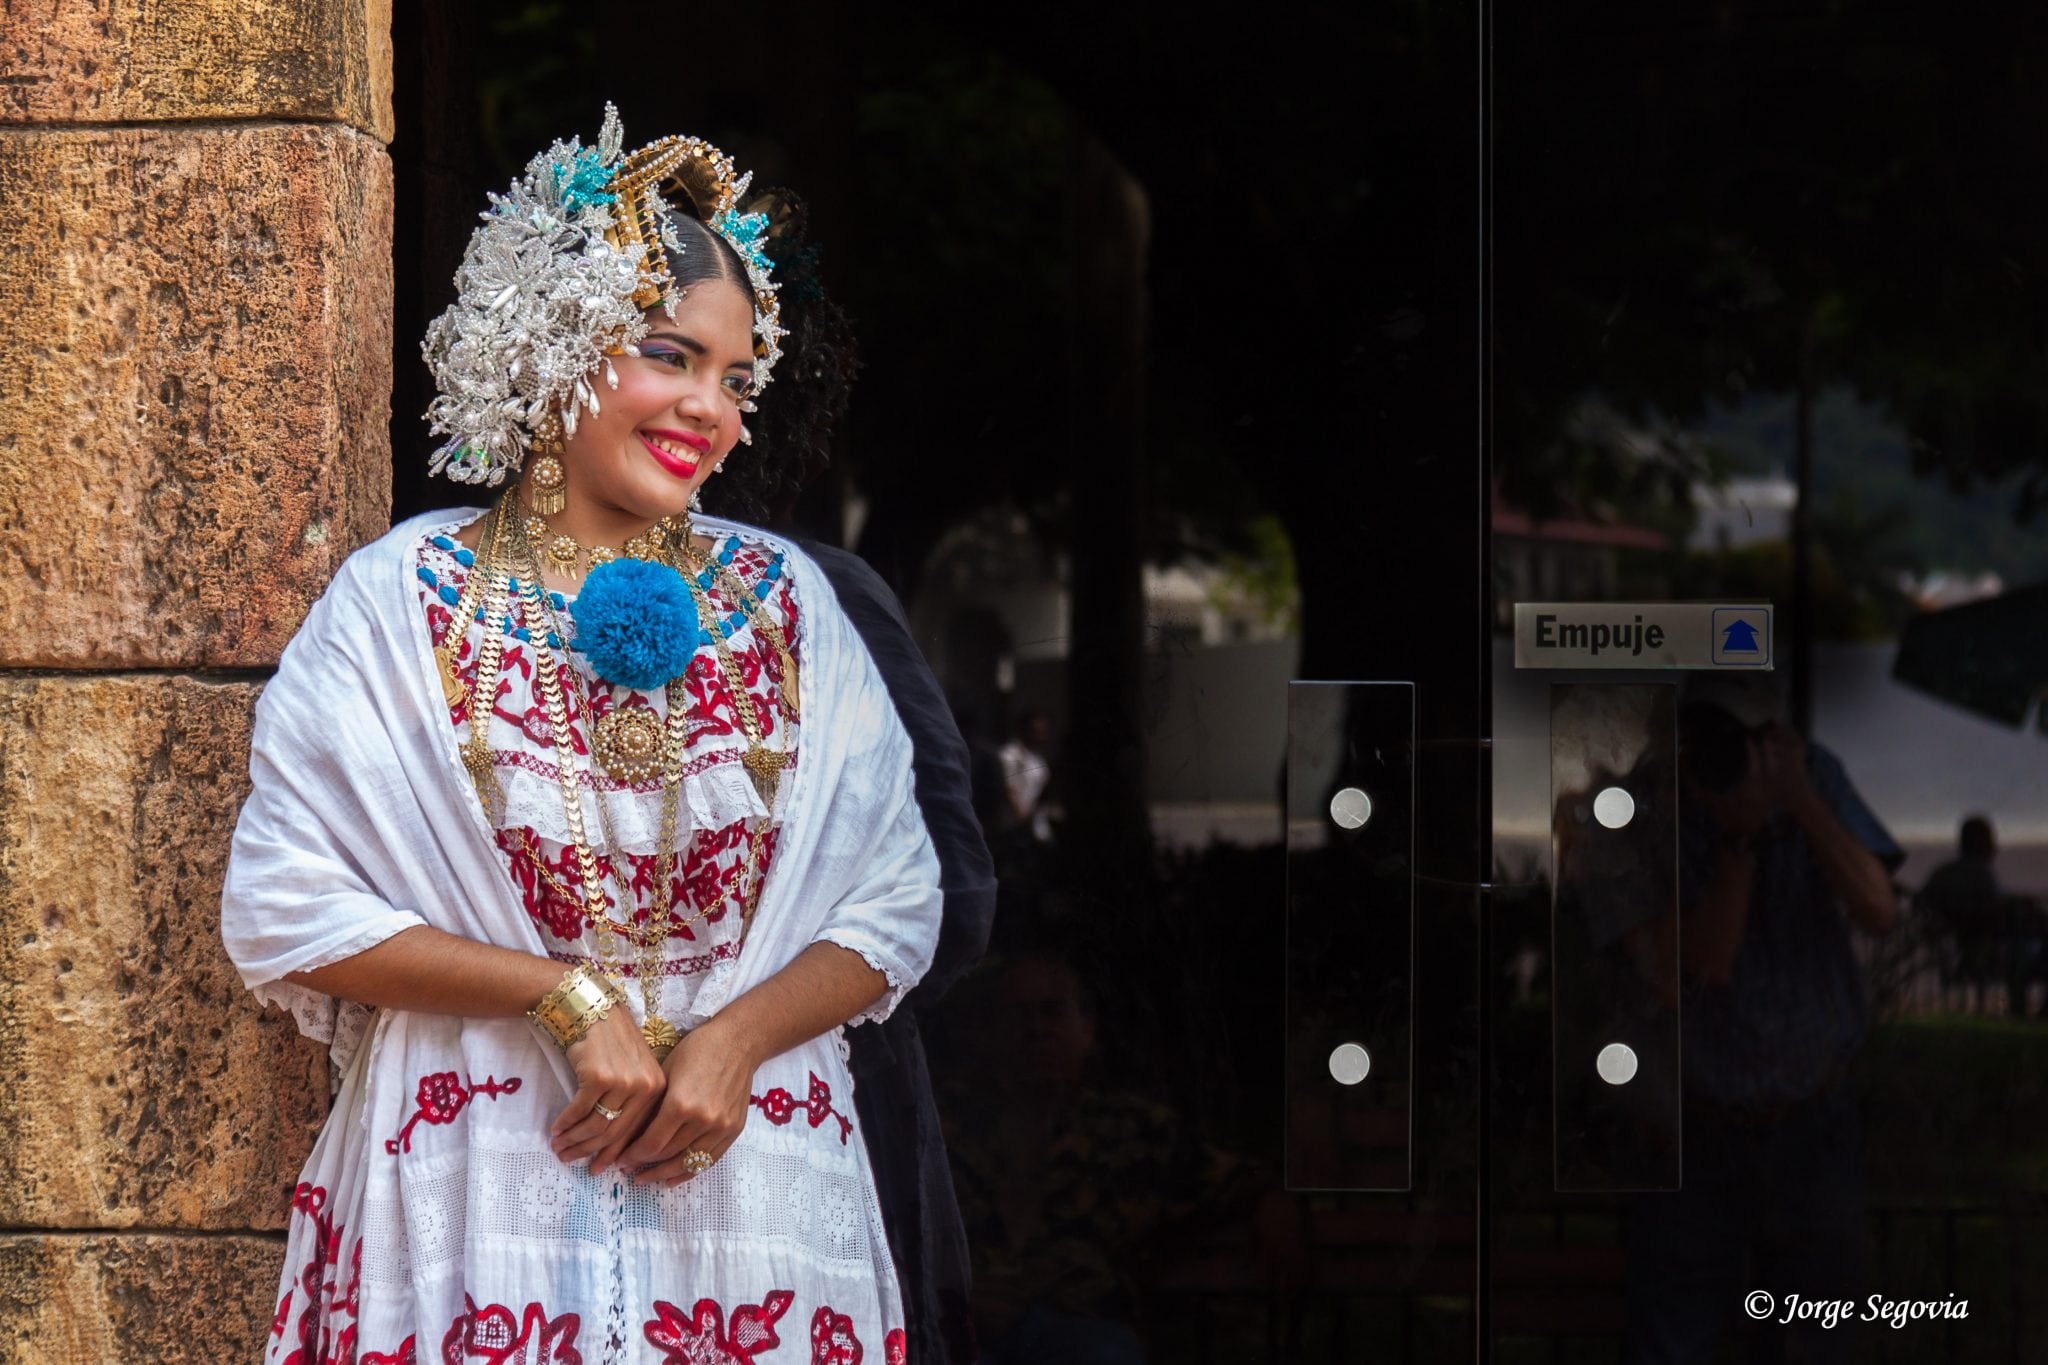 Muchacha con el traje típico panameño